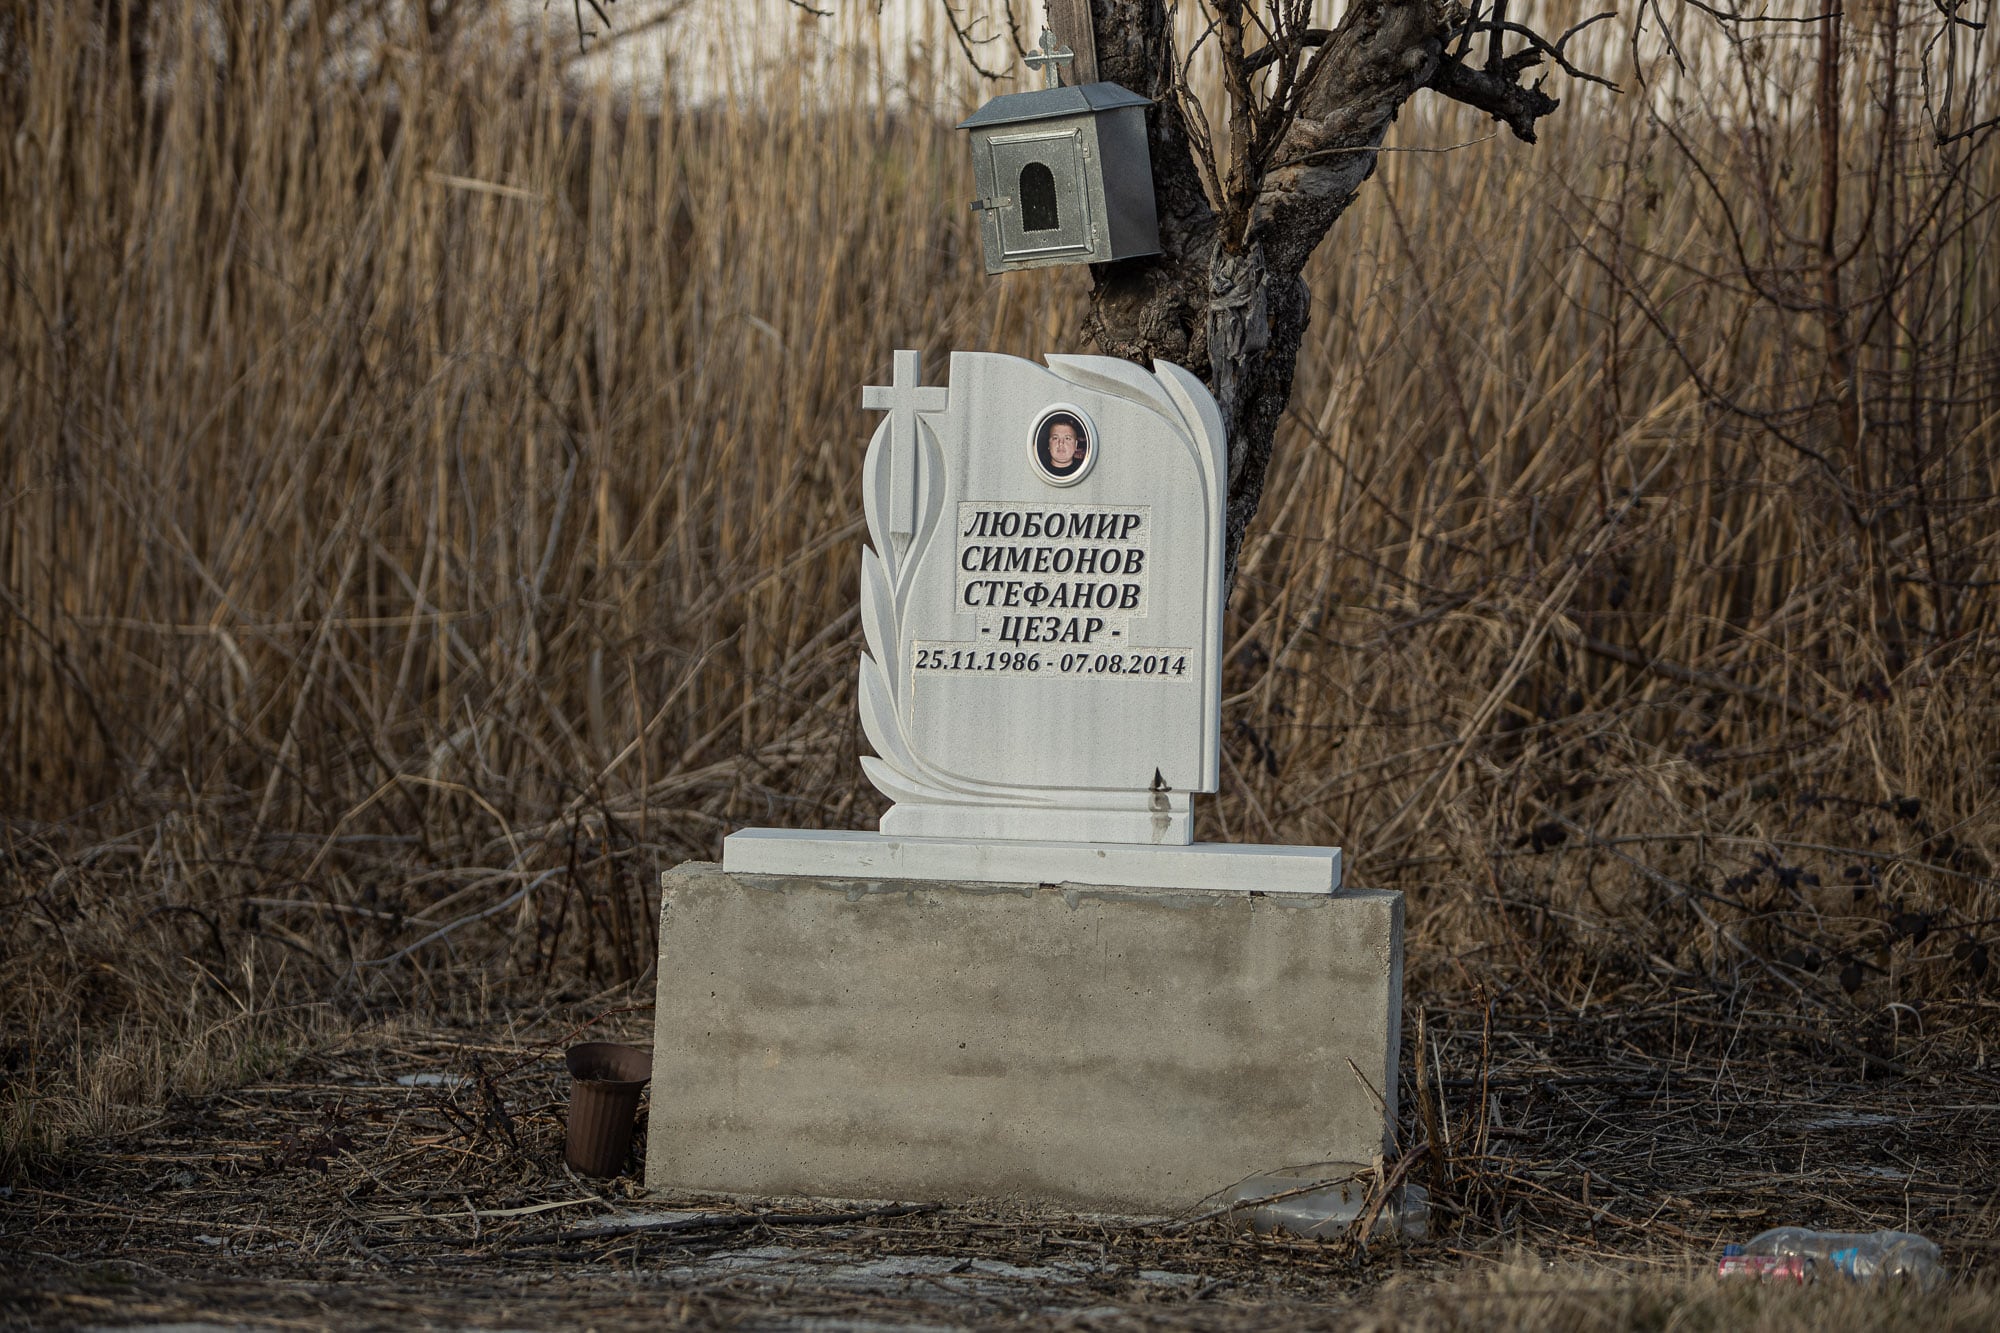 memorial to Lyubomir near Hadzhievo